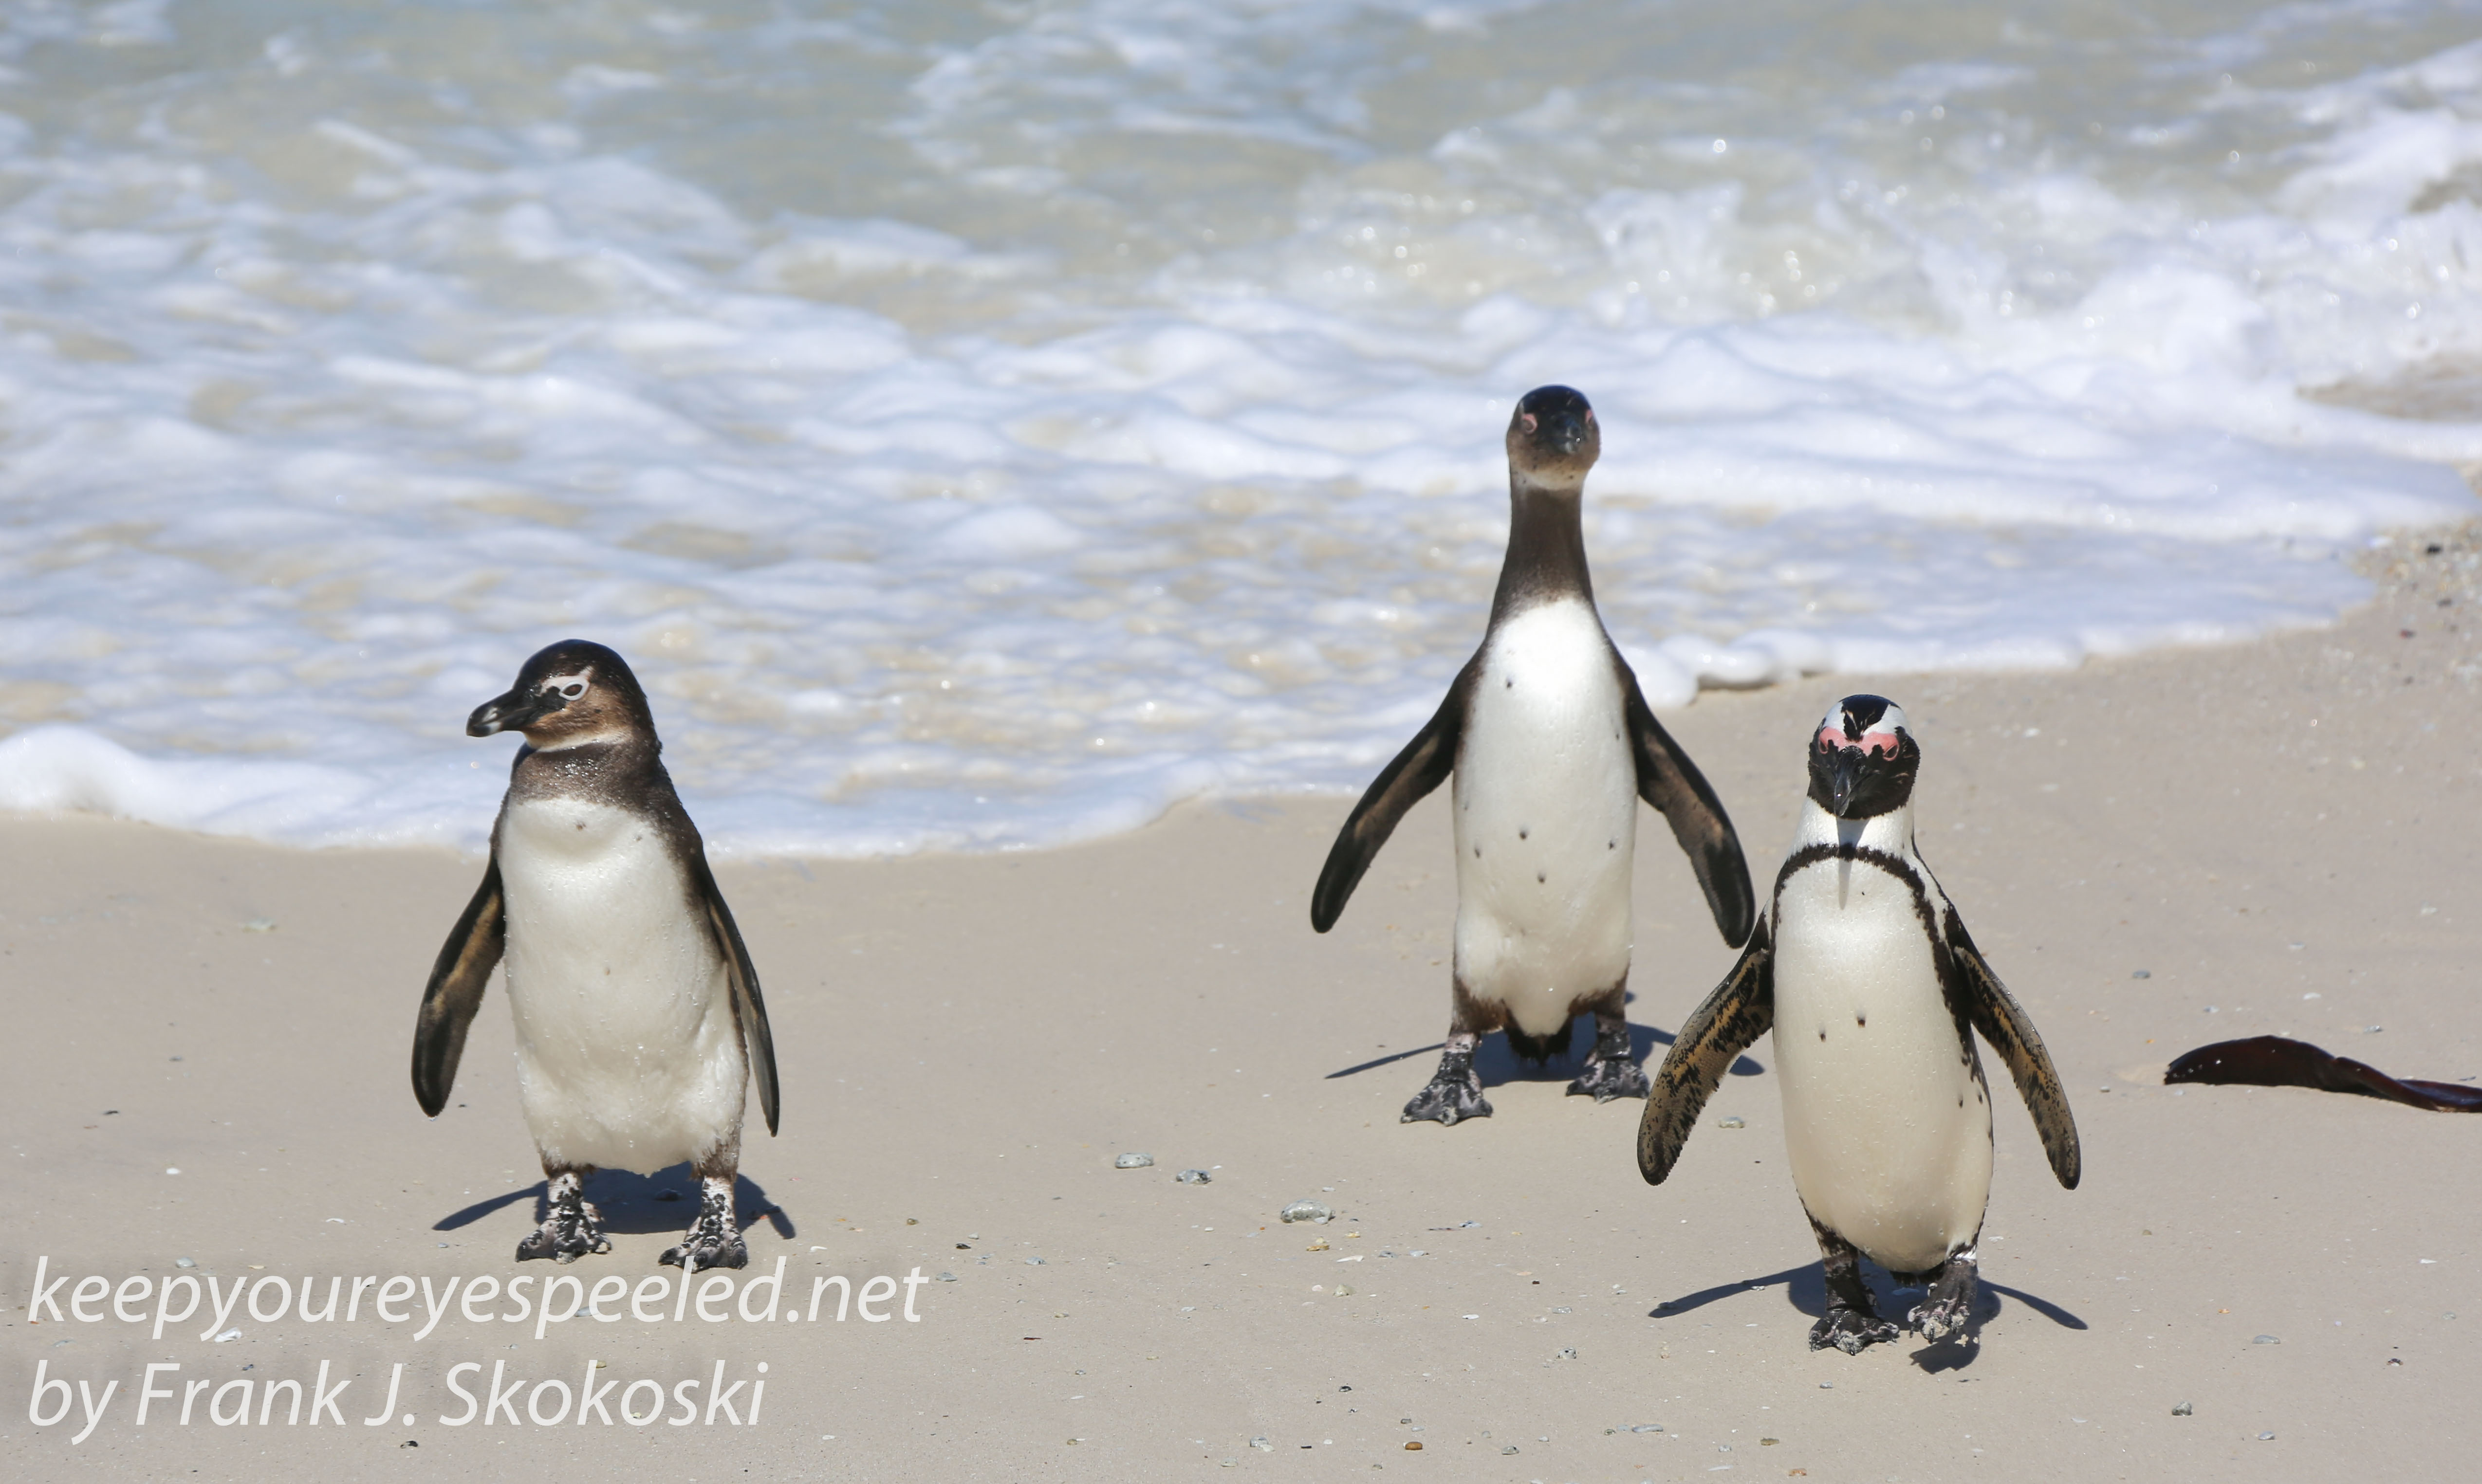 Cape Point penguins -23